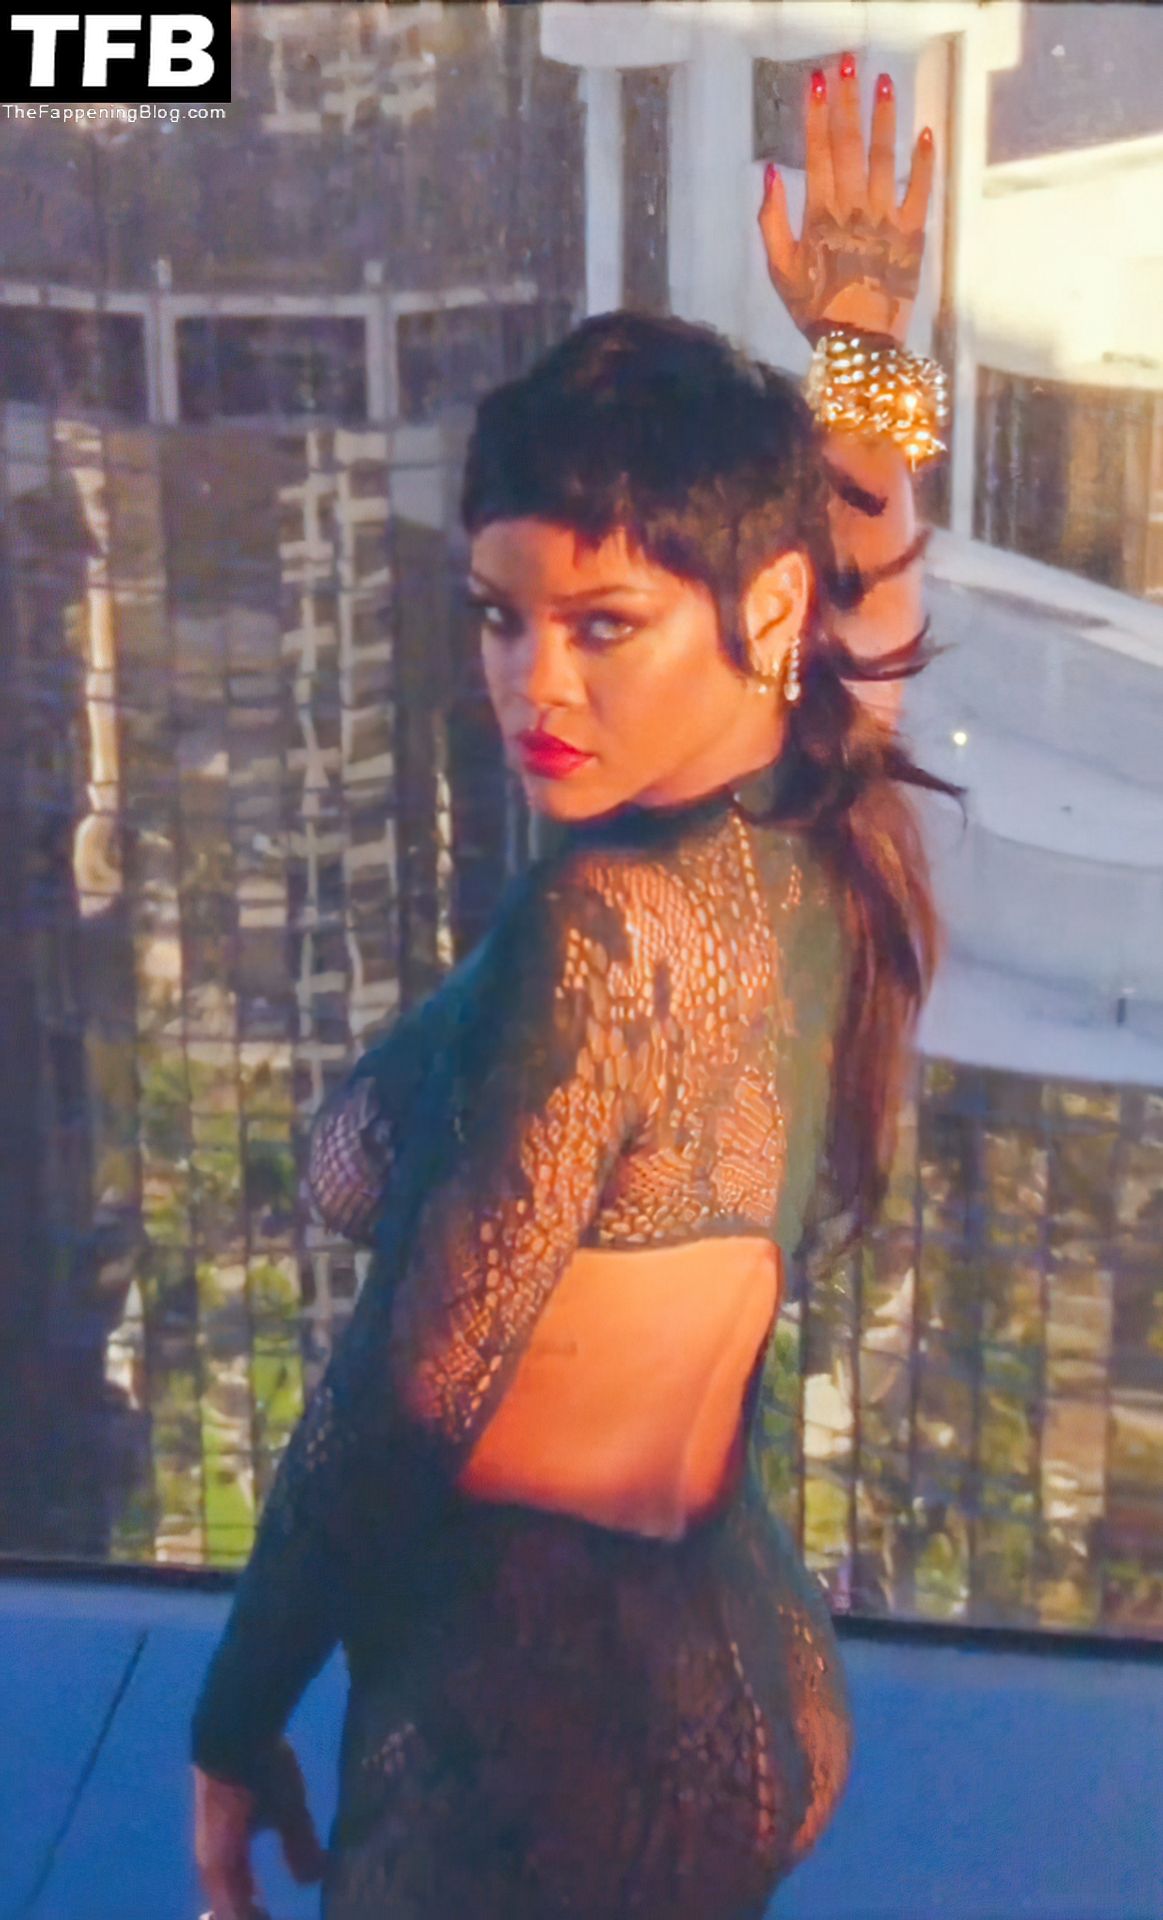 Rihanna-Sexy-Braless-Boobs-19-1-thefappeningblog.com_.jpg